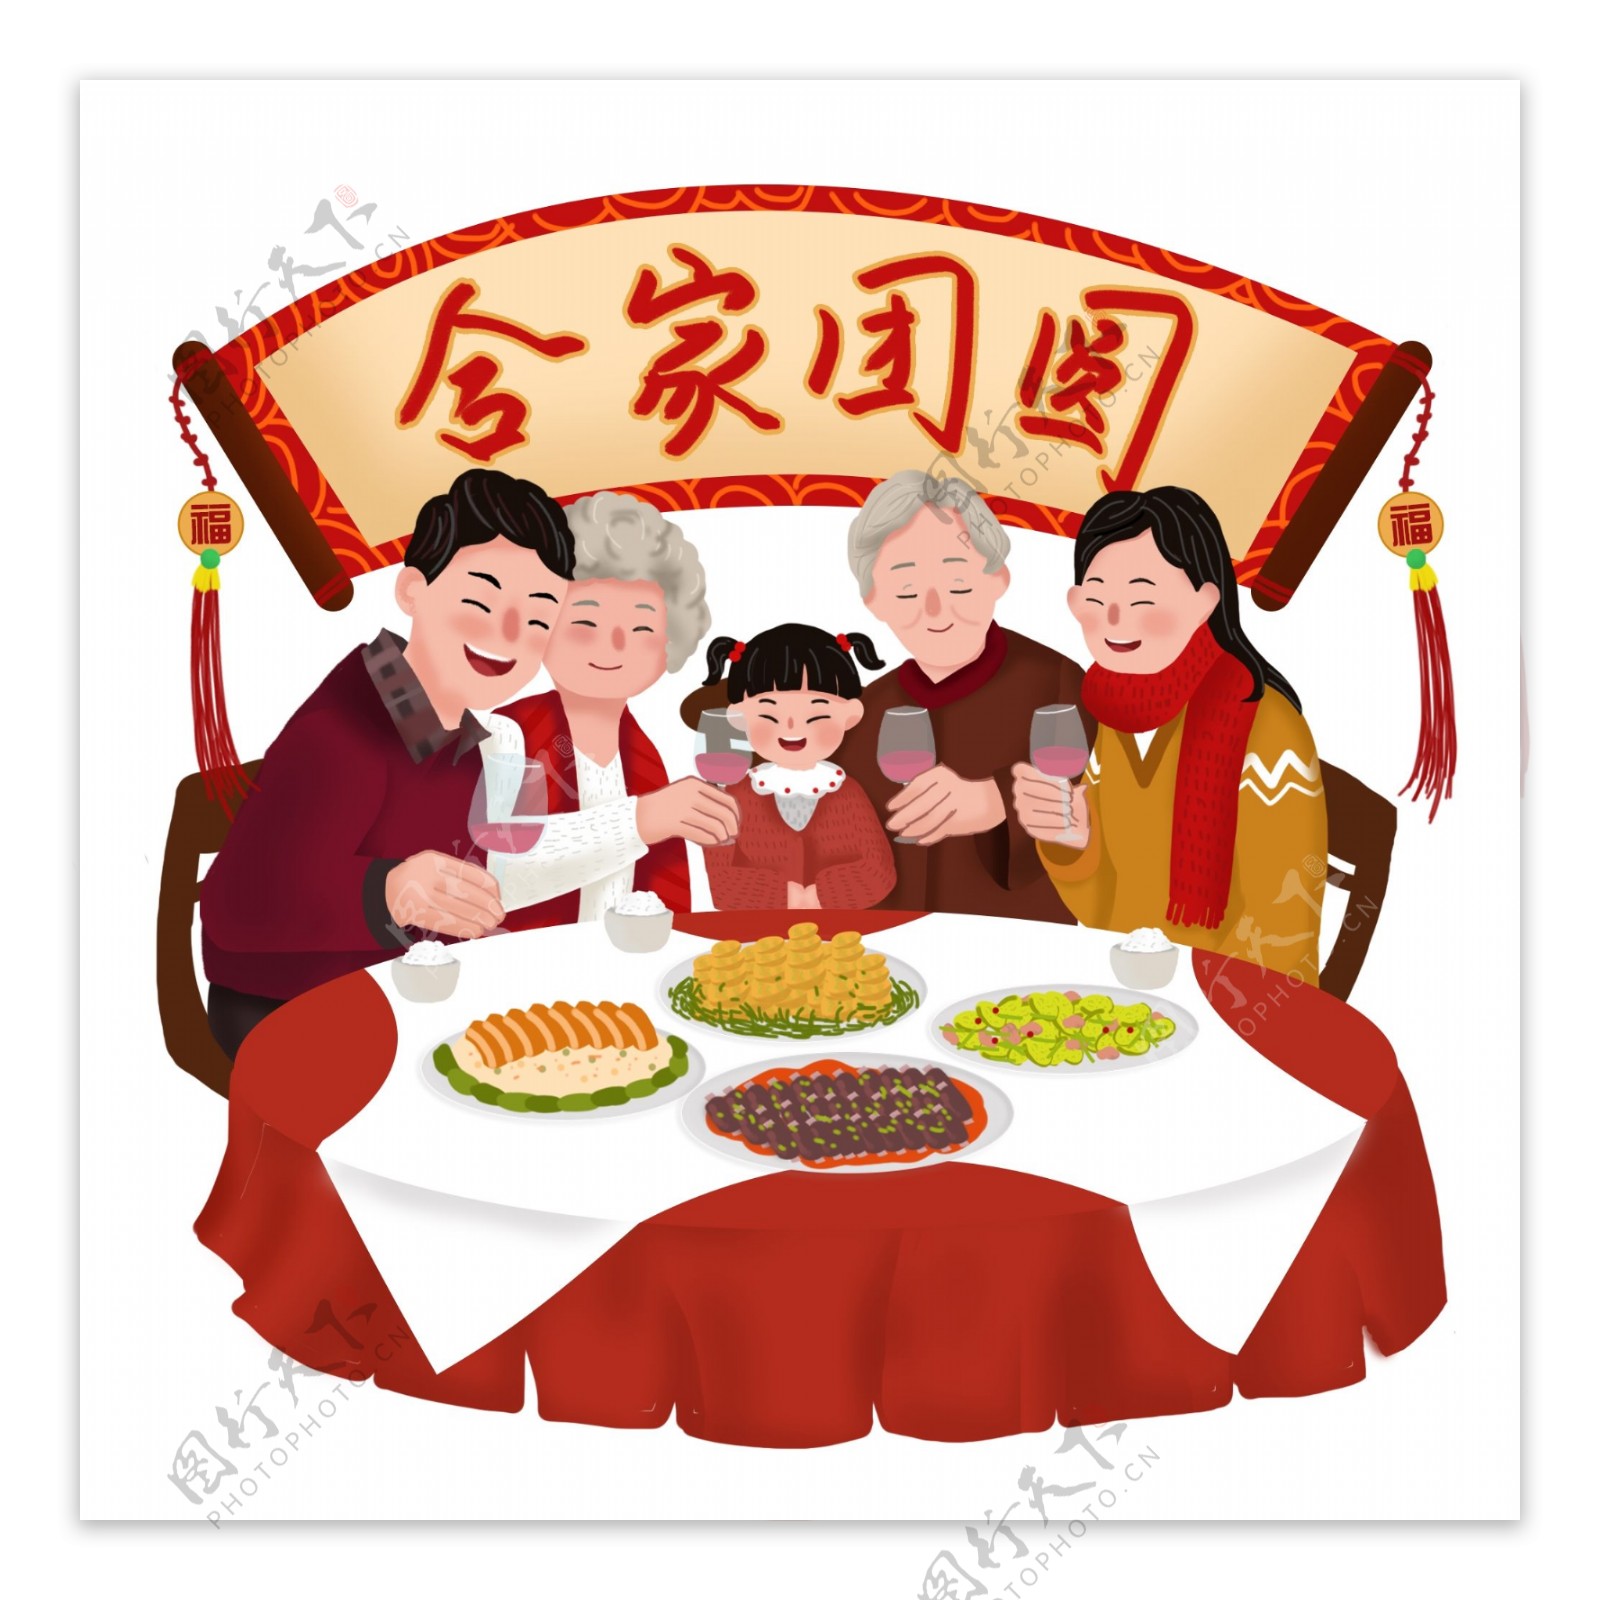 2019猪年春节合家团圆年夜饭聚餐插画